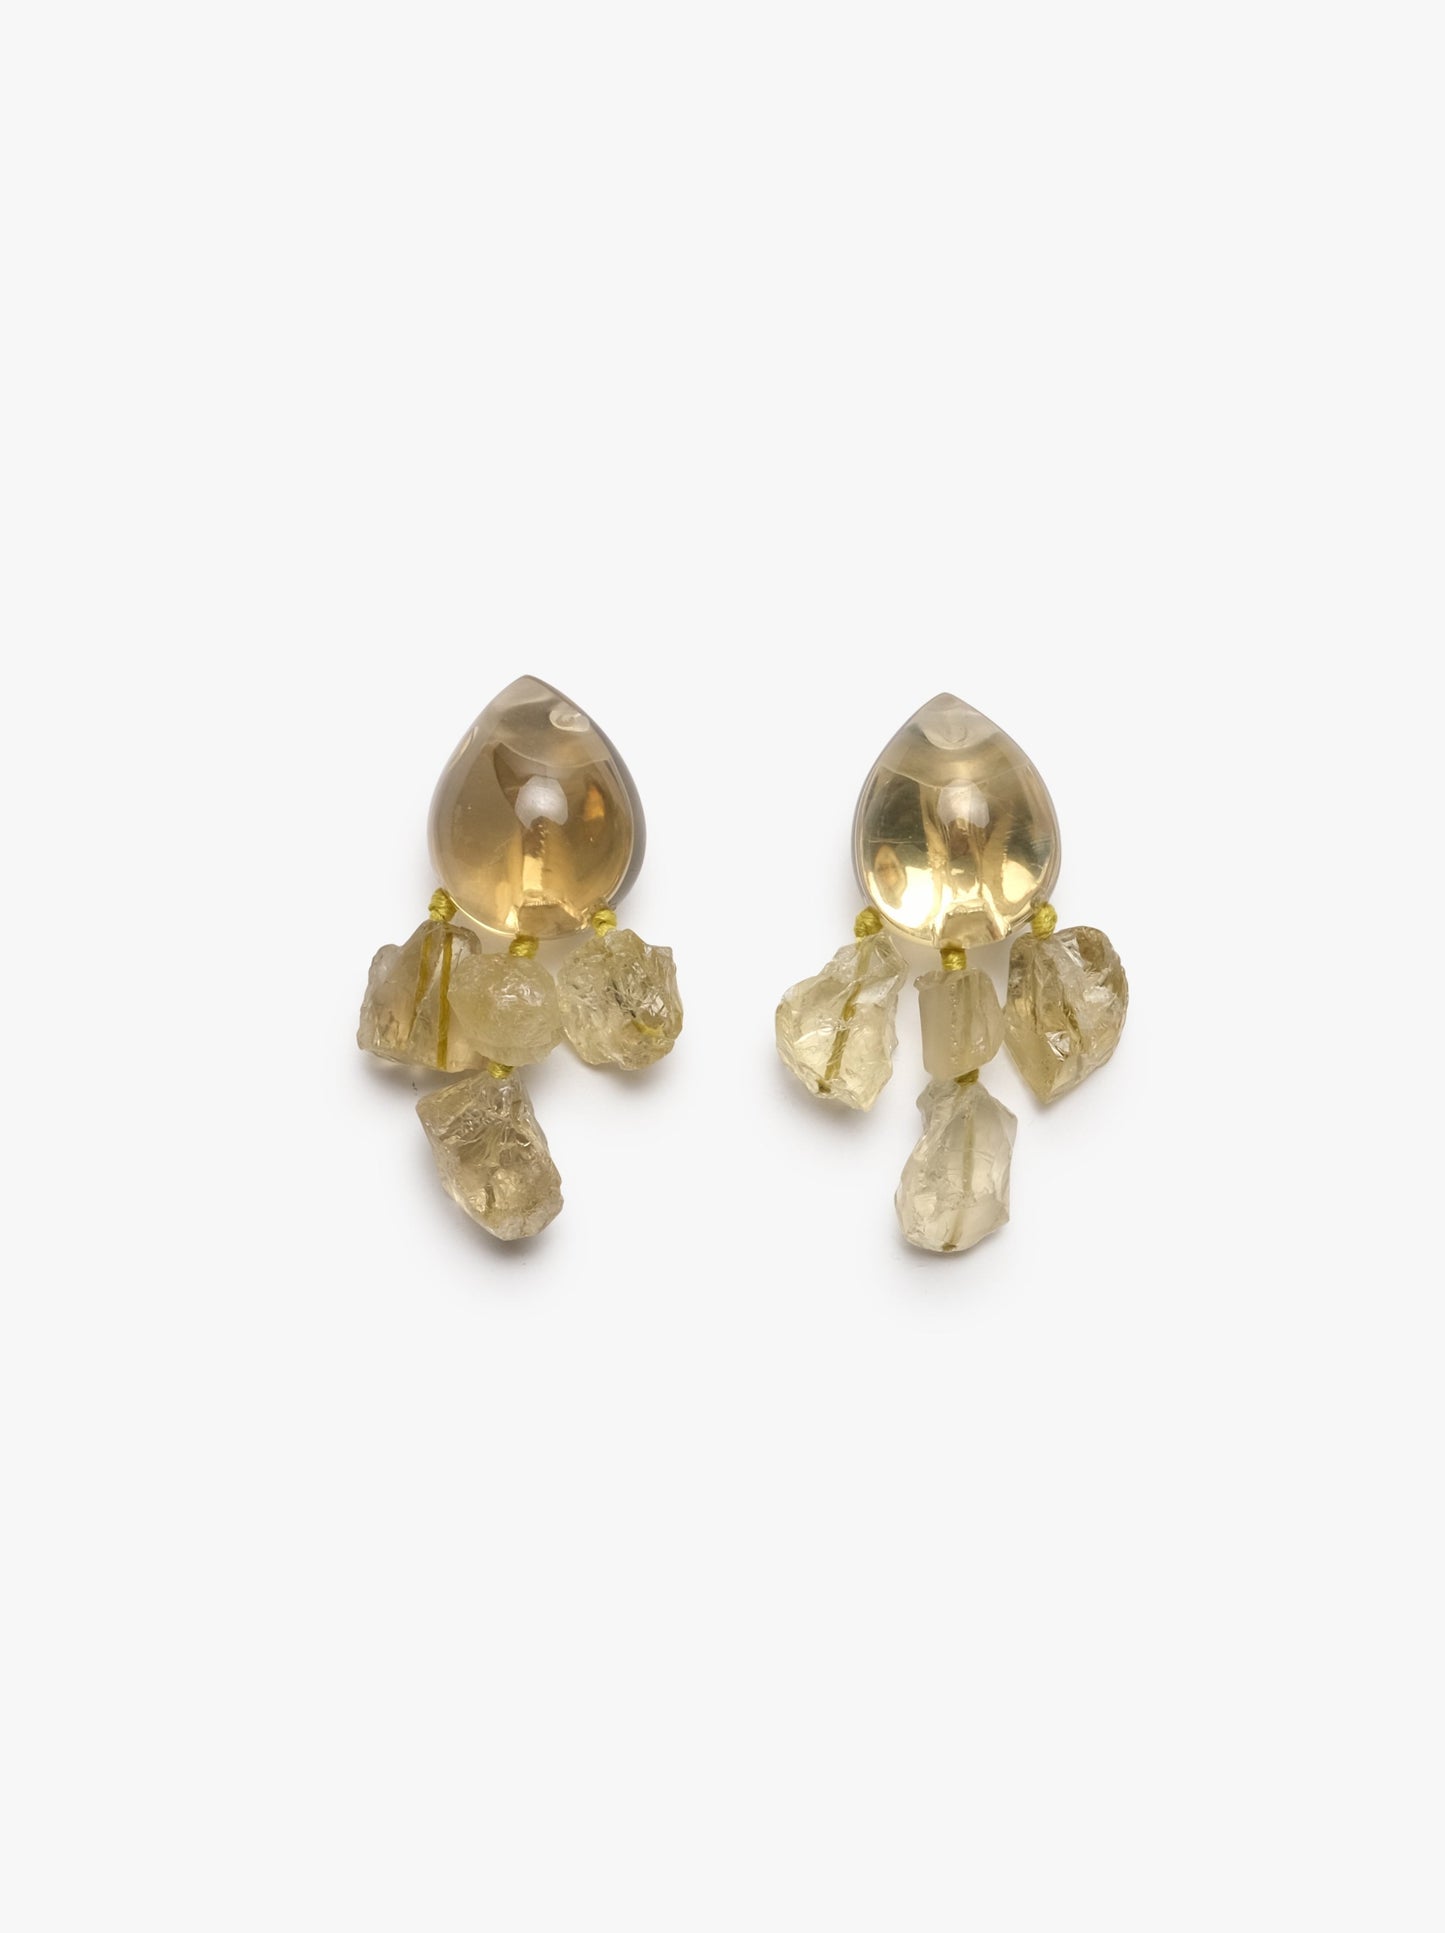 Stud earrings: lemon quartz